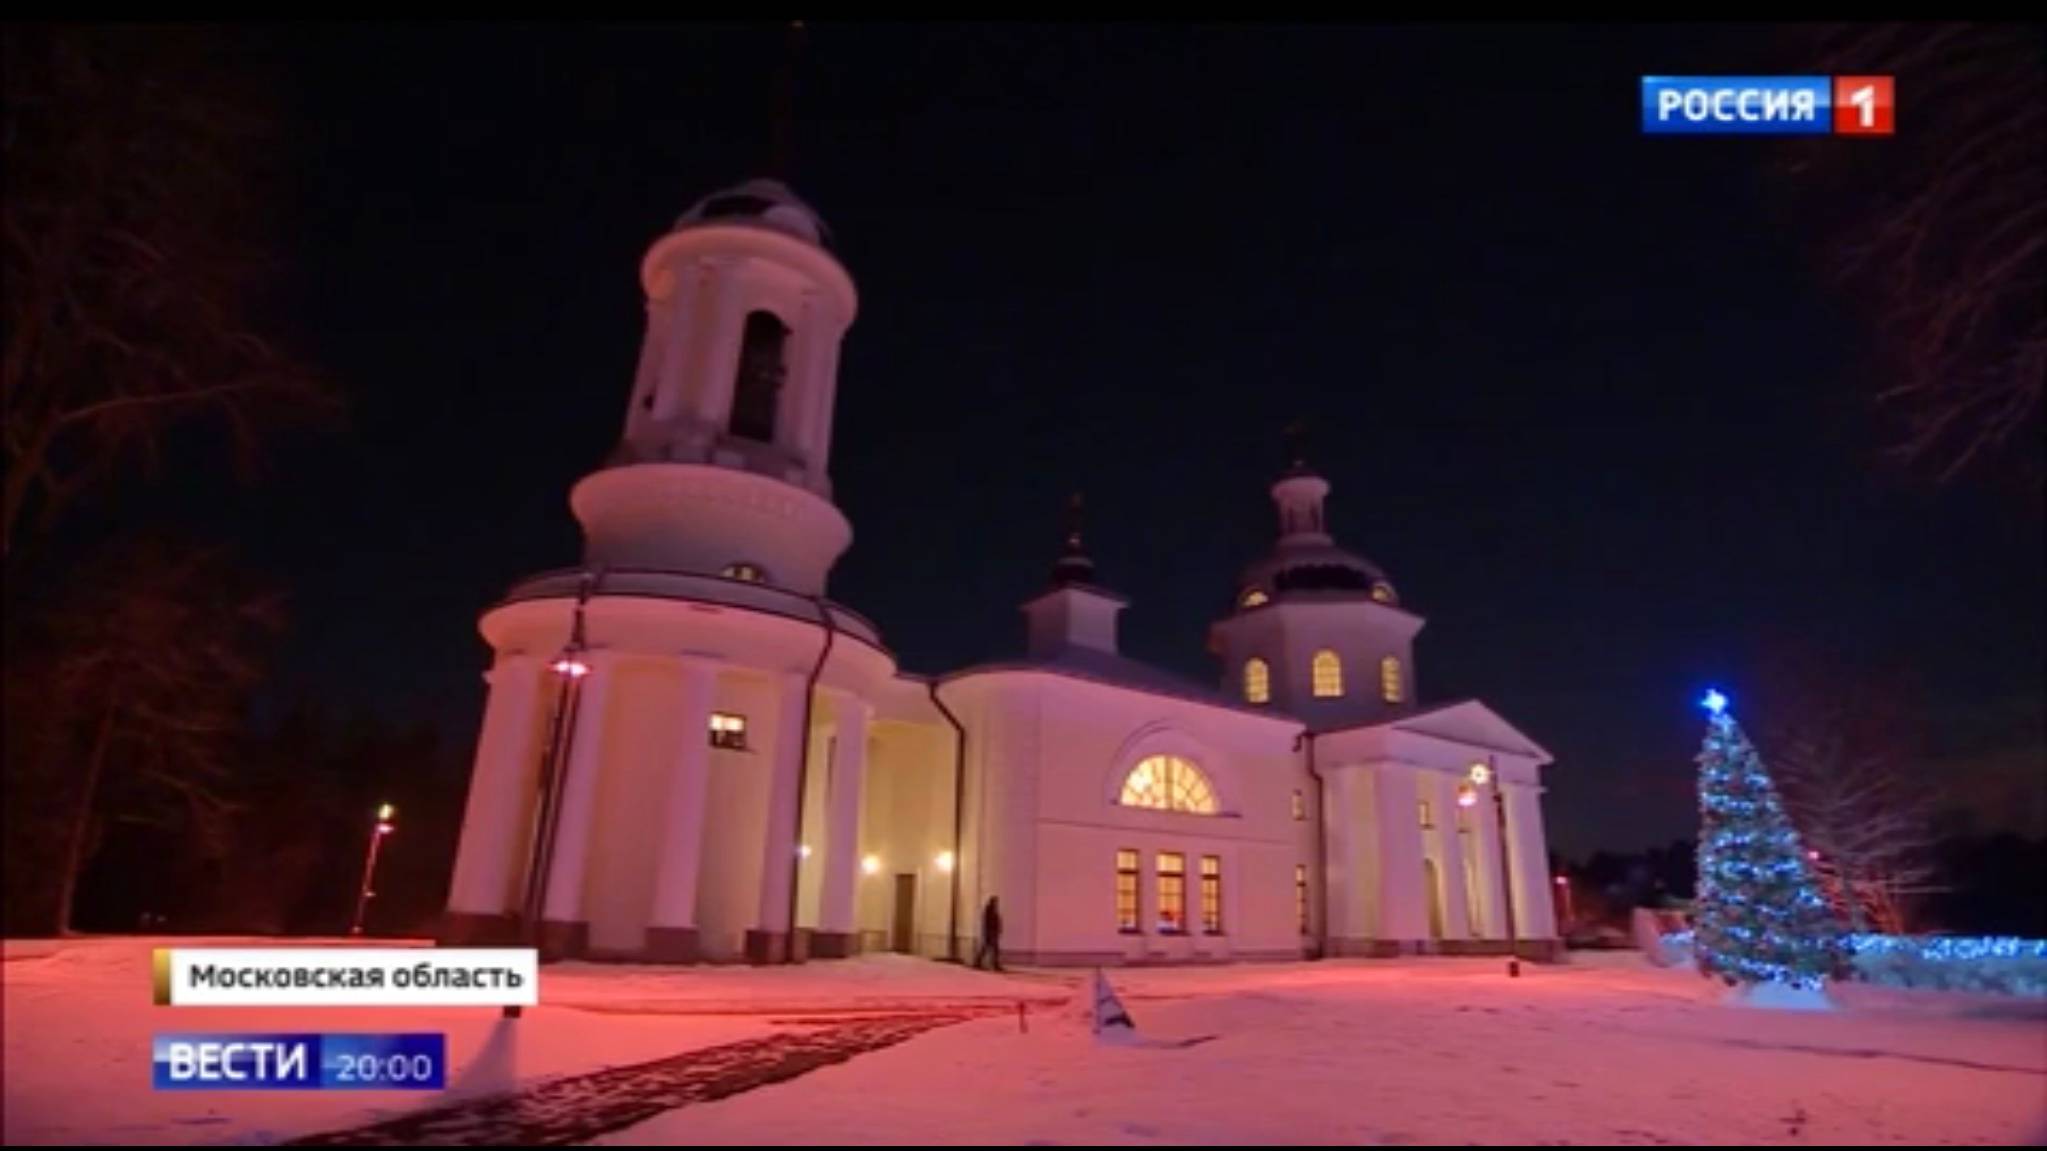 Spora biaala cerkiew nocą